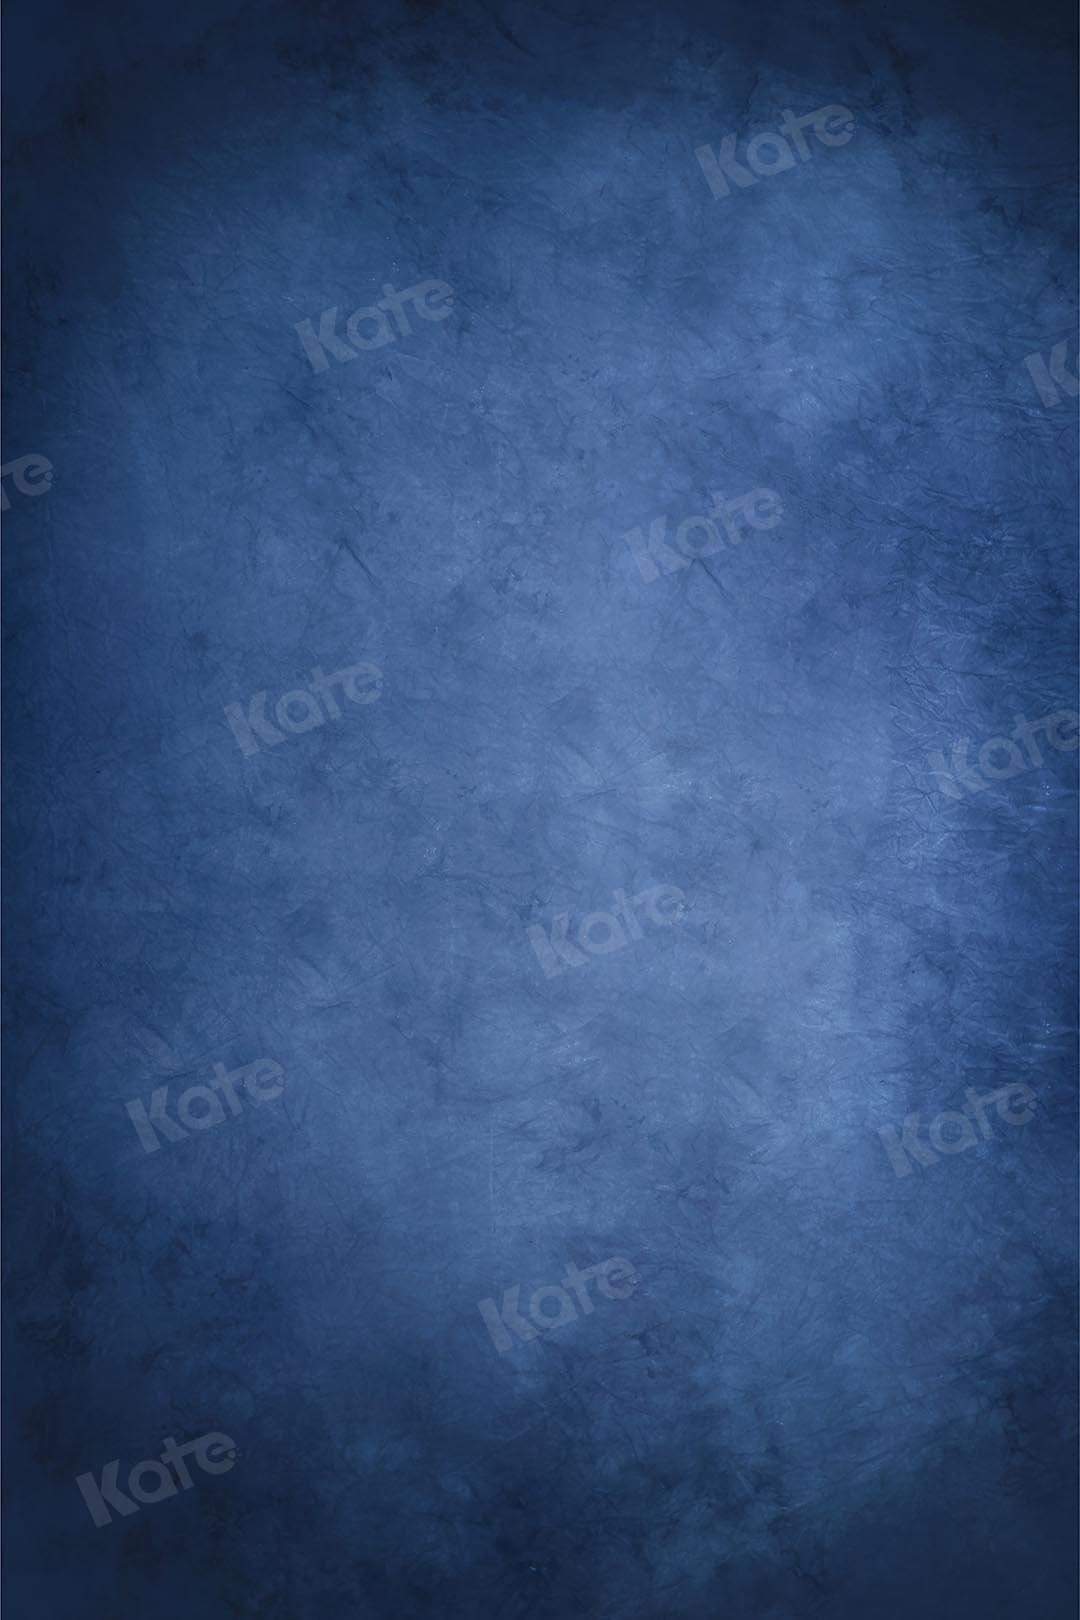 RTS-Kate 写真撮影抽象的な青いオールドマスターの背景設計された Kate Image